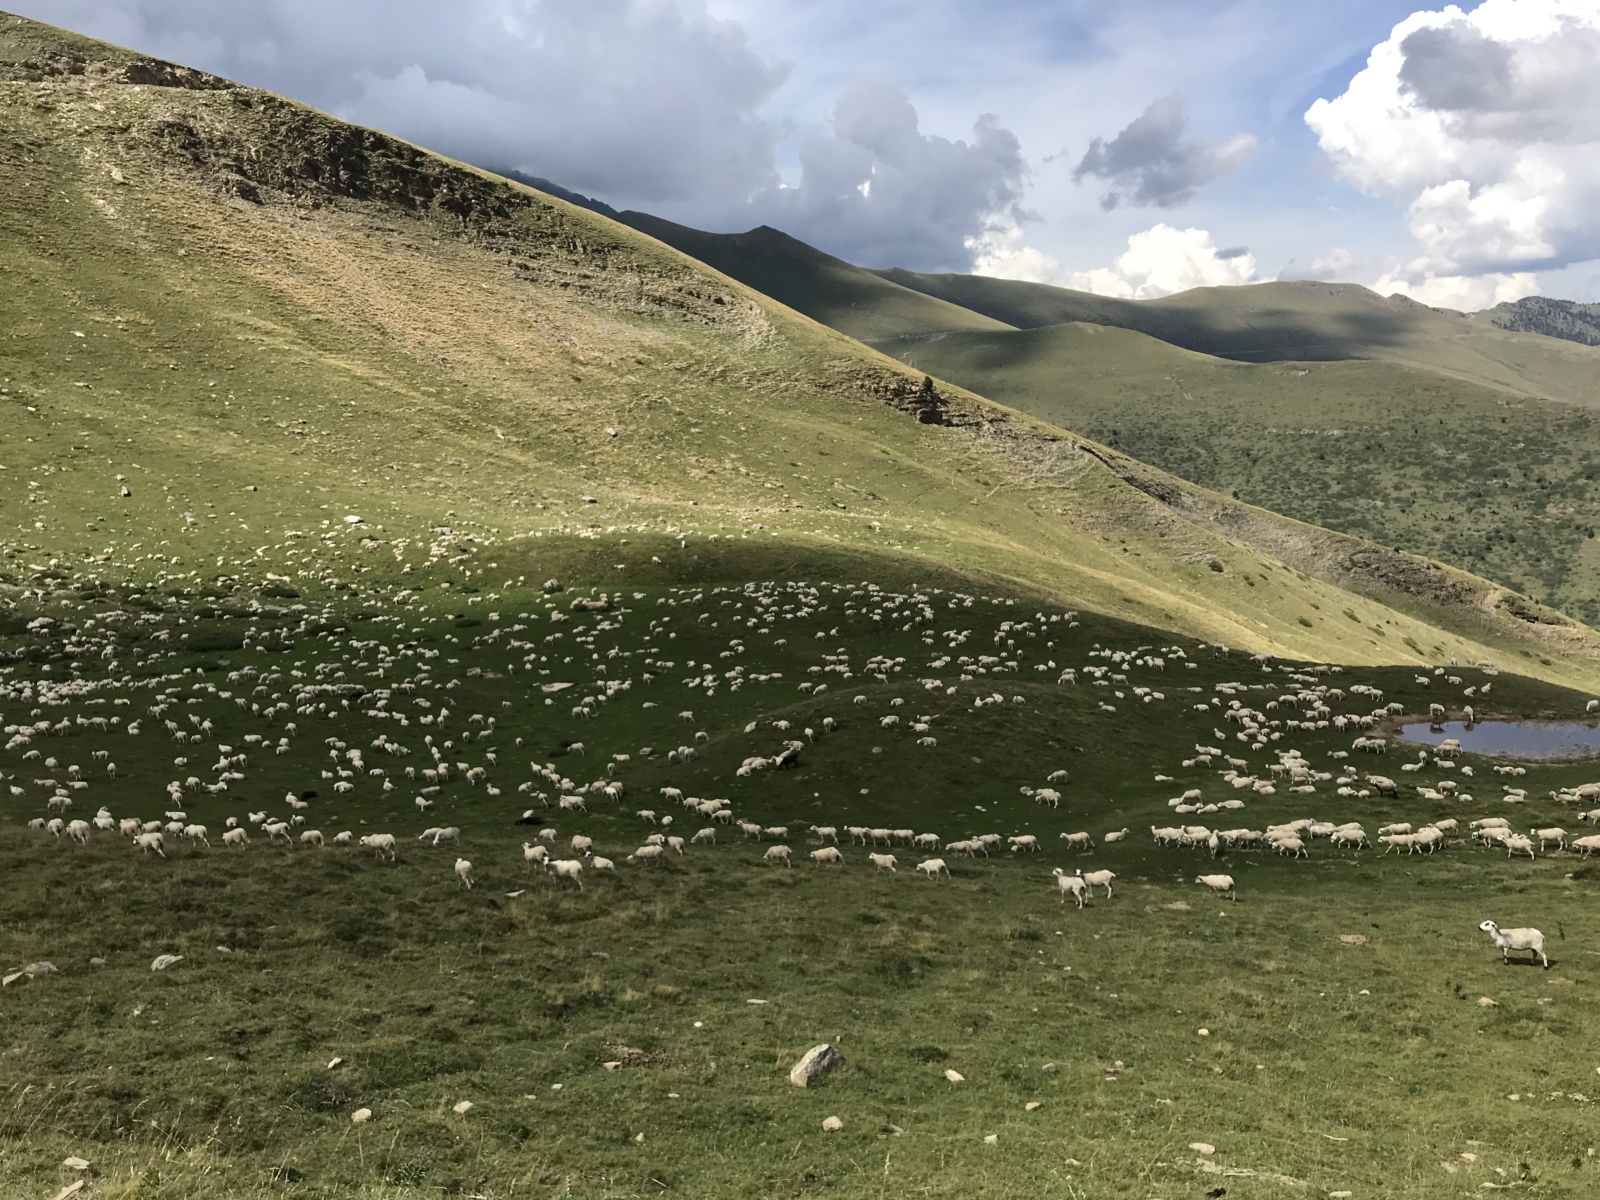 Eine sehr überschaubare Anzahl Schafe.